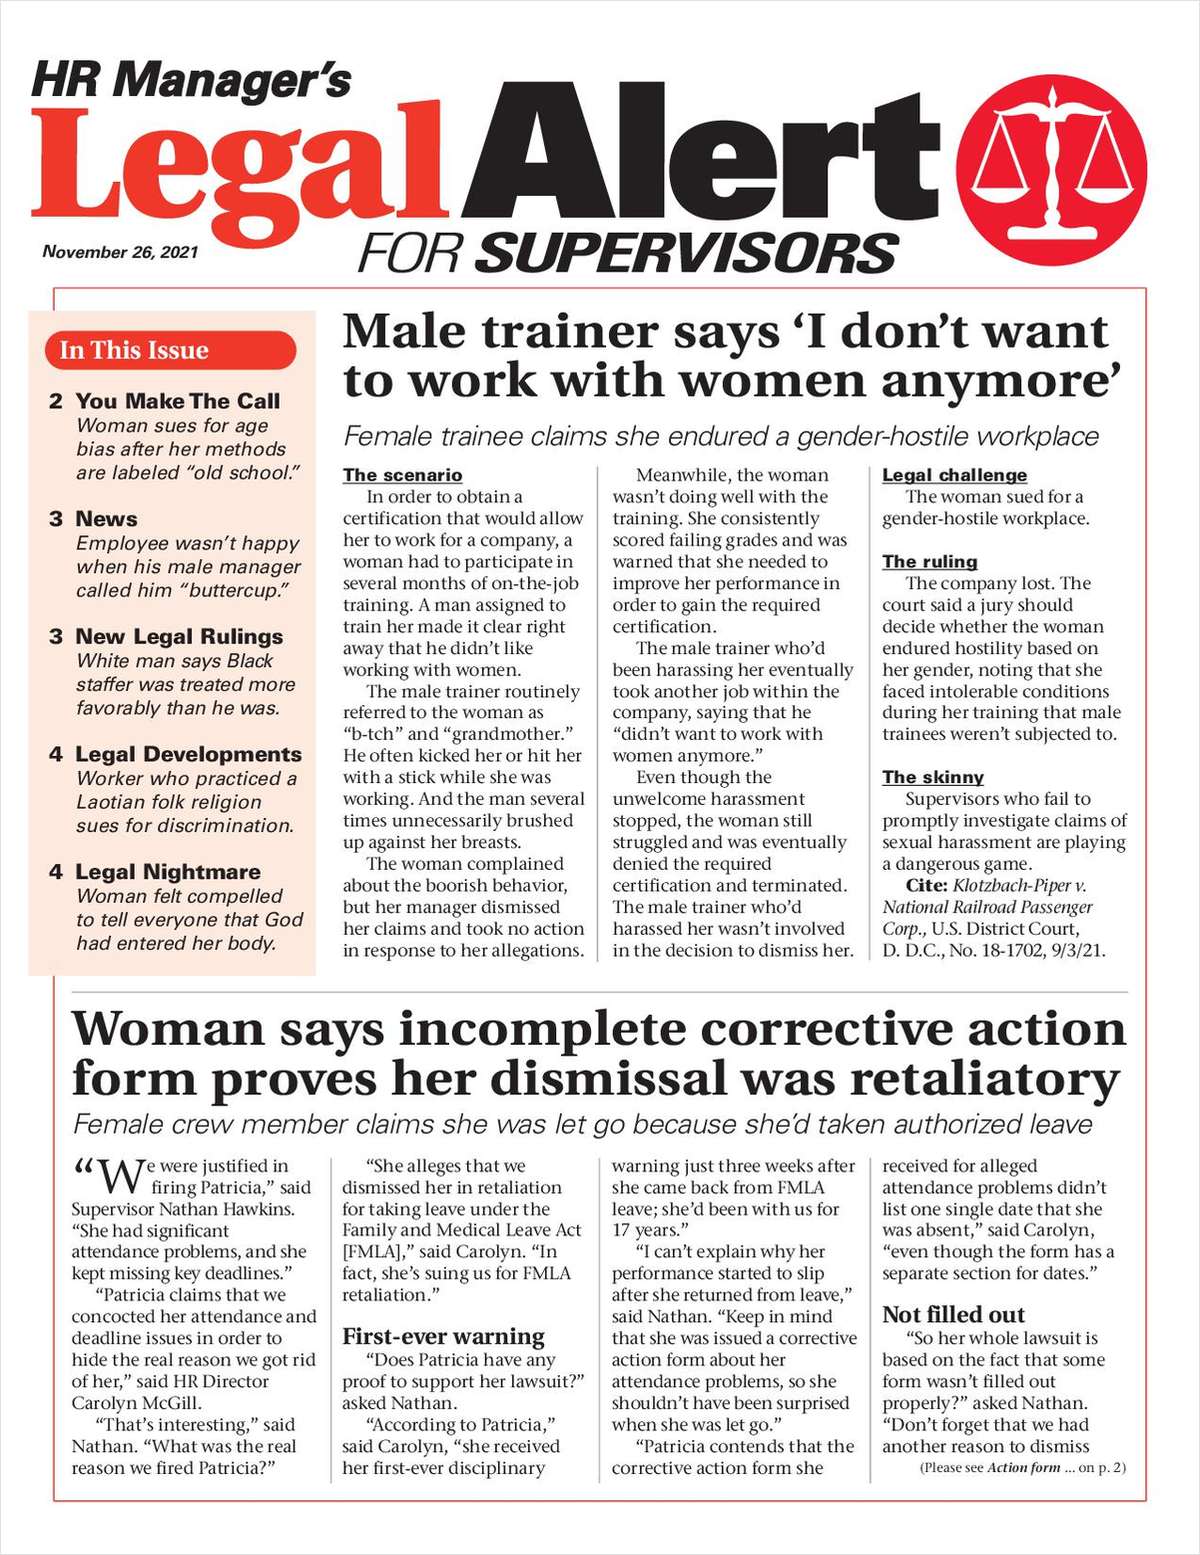 HR Manager's Legal Alert for Supervisors Newsletter: November 26 Edition